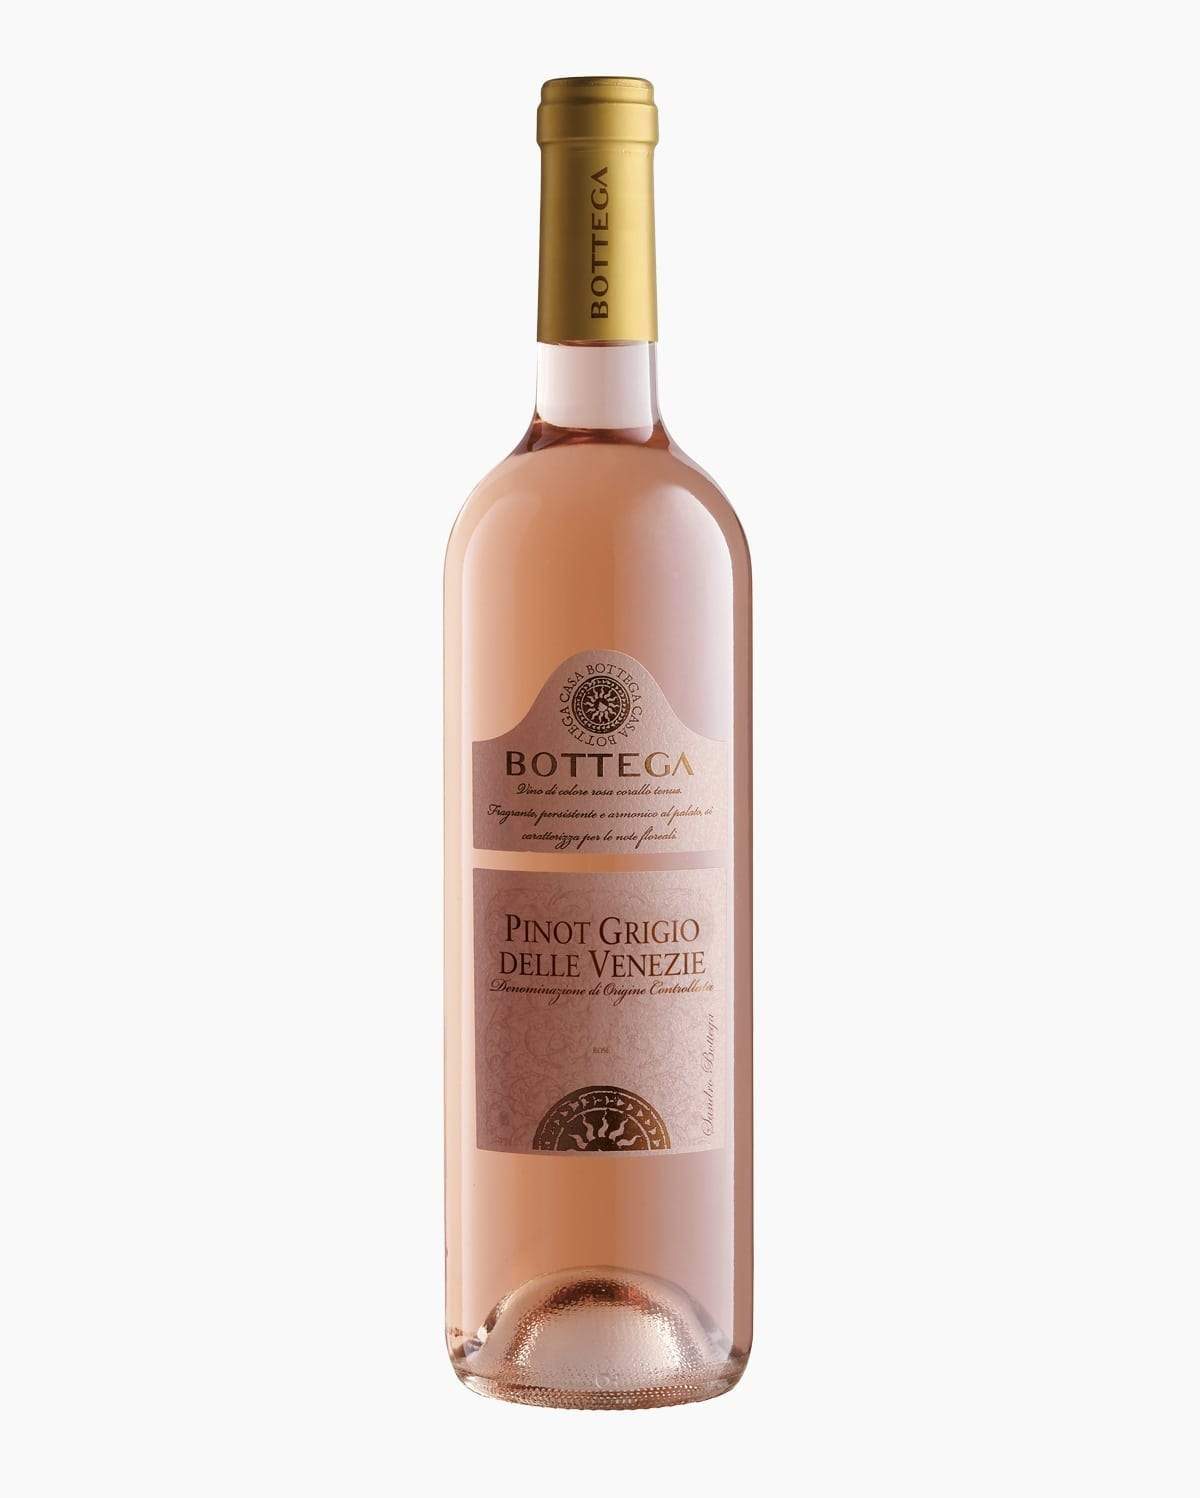 Bottega Pinot Grigio Rosé IGT Venezia 2018